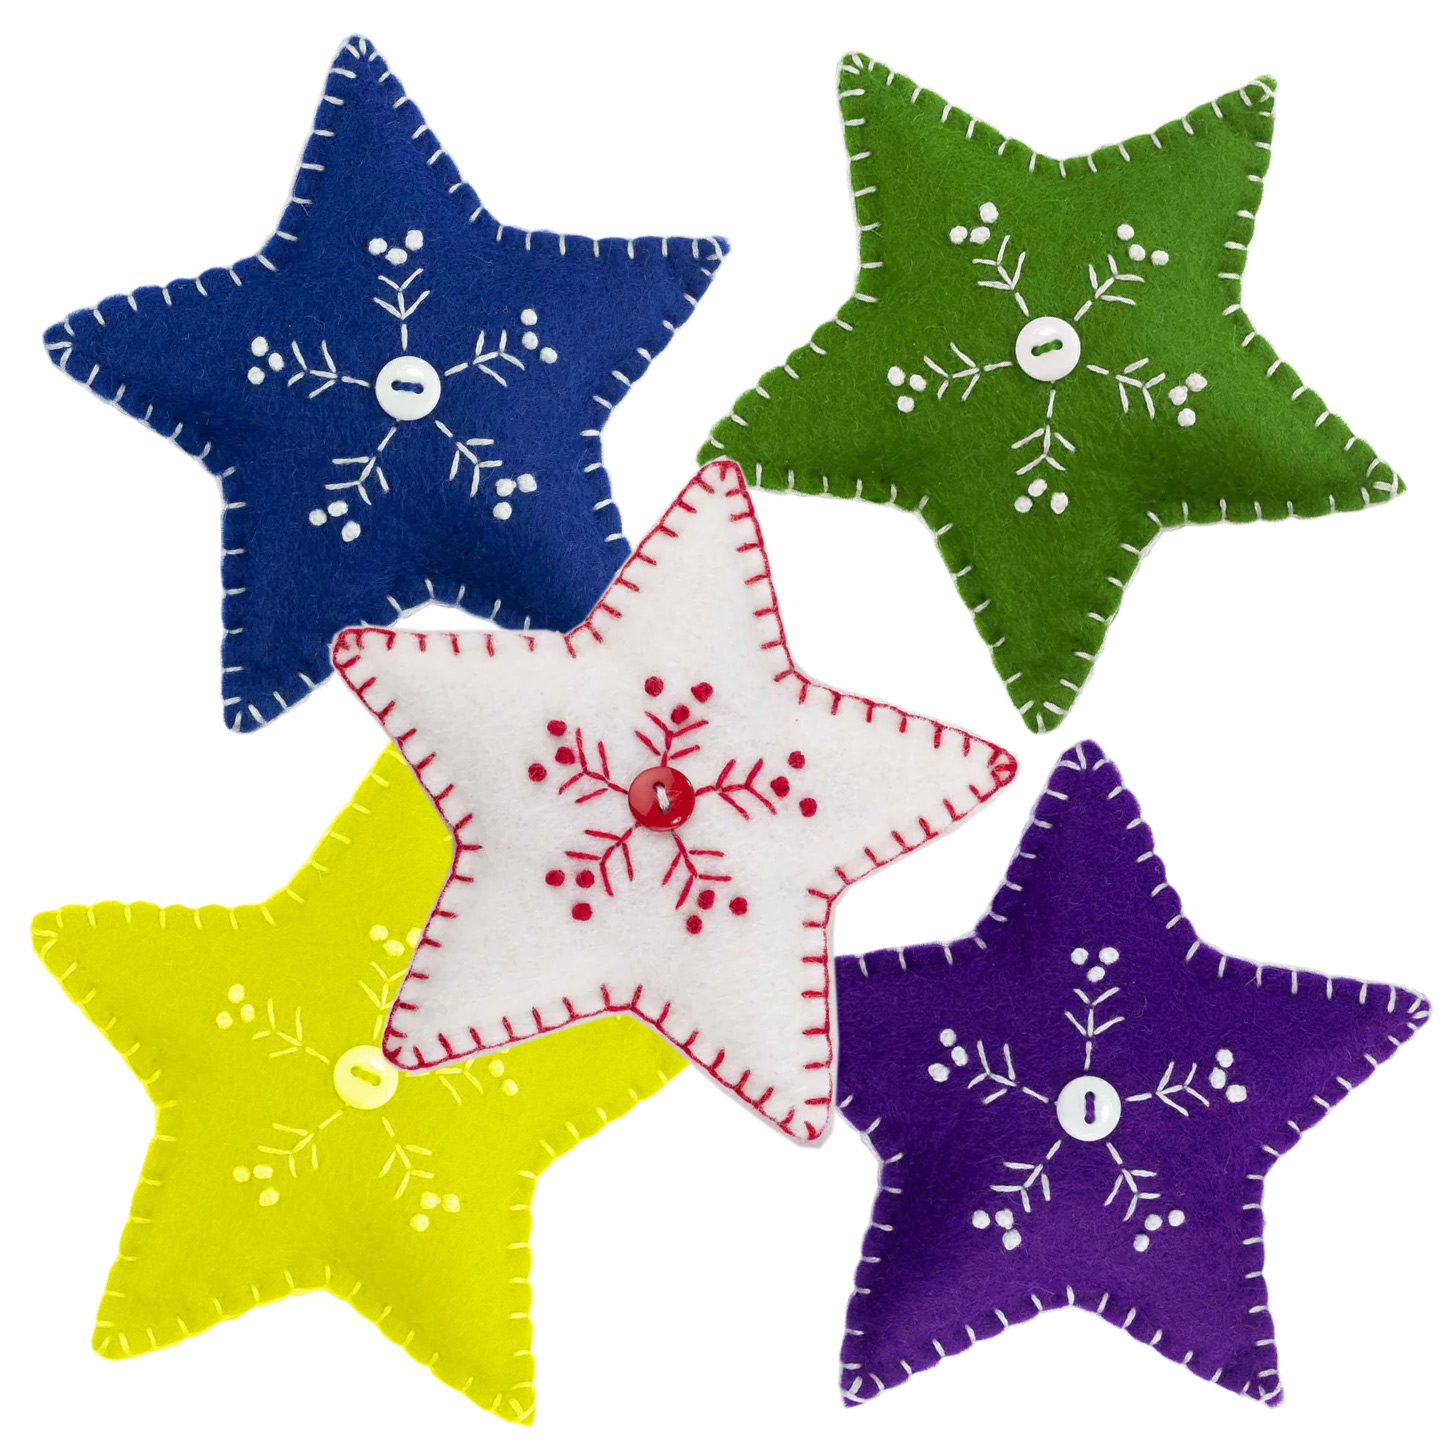 Embroidered Felt Stars